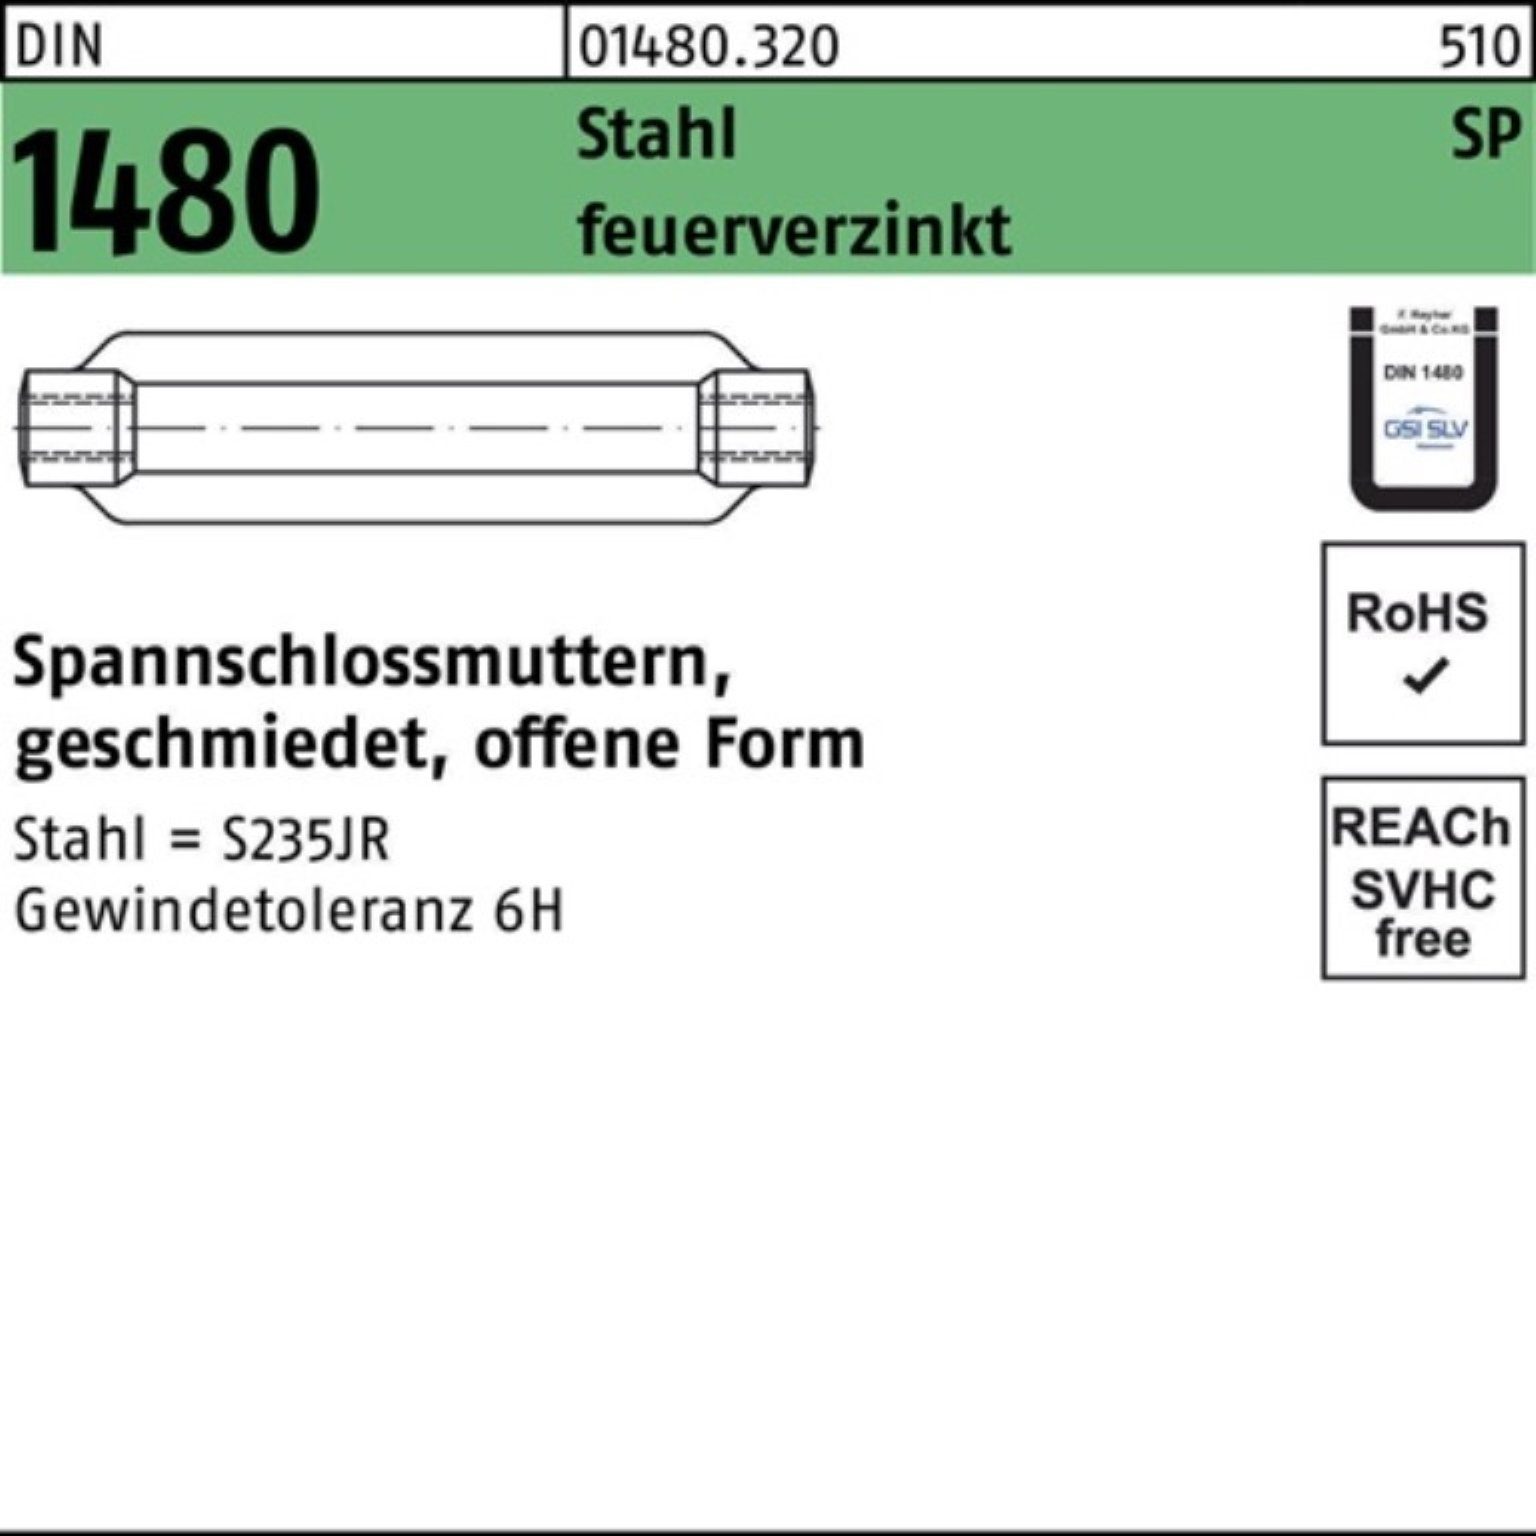 Reyher Spannschloss 100er offen 1480 feue Pack M24/255 Spannschlossmutter DIN SP Stahl ÜZ